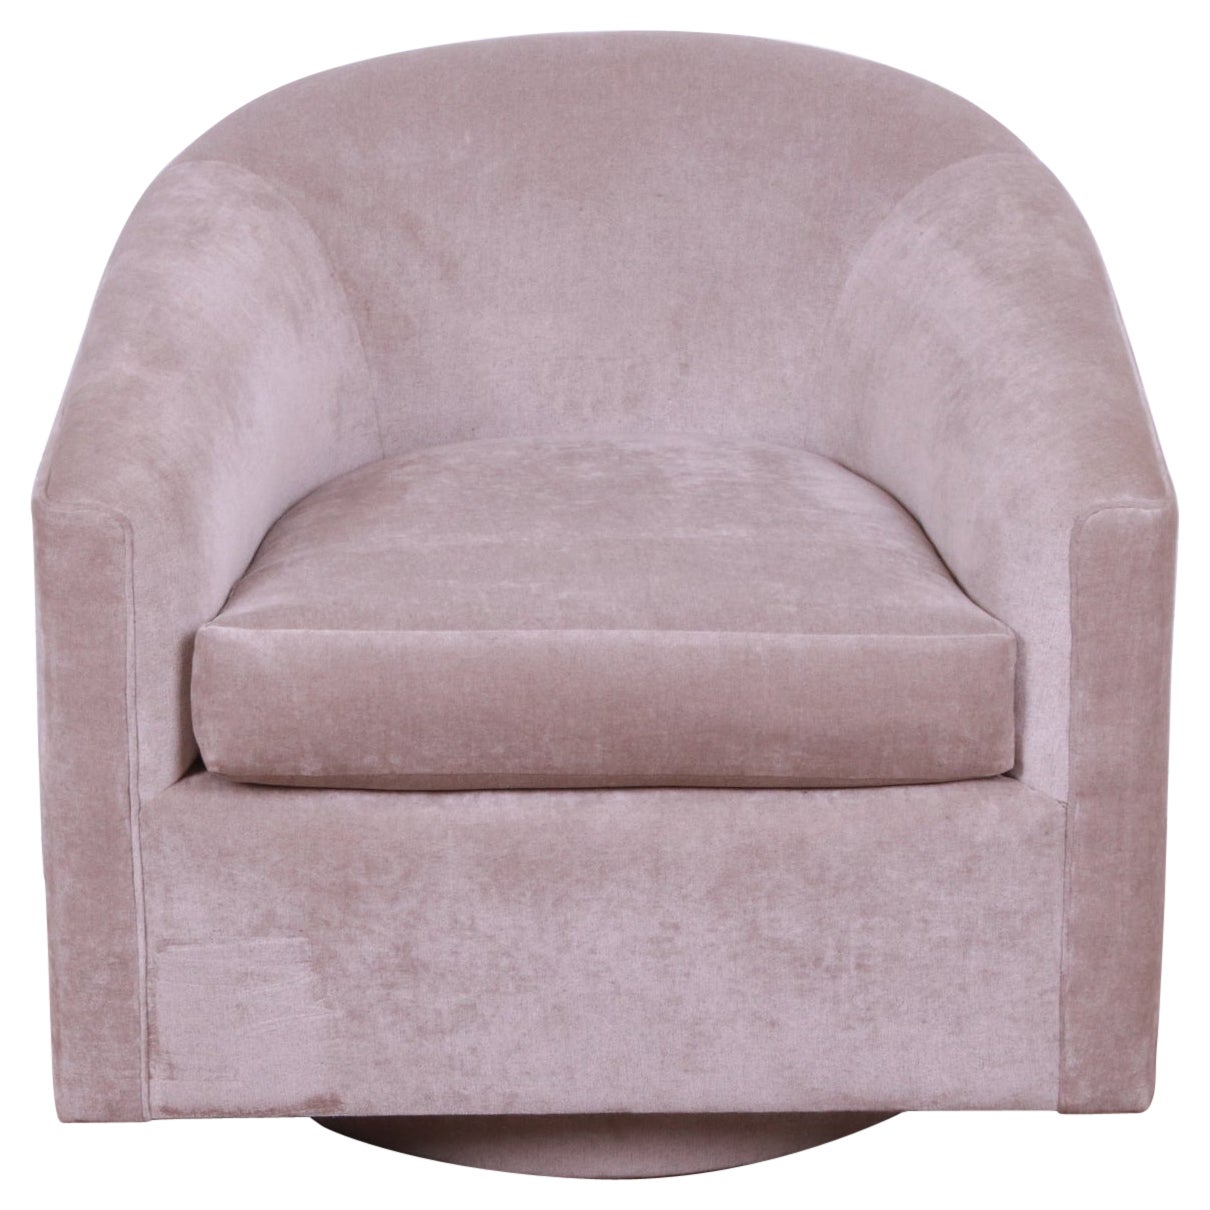 Milo Baughman Swivel Lounge Chair in Gray Velvet Upholstery